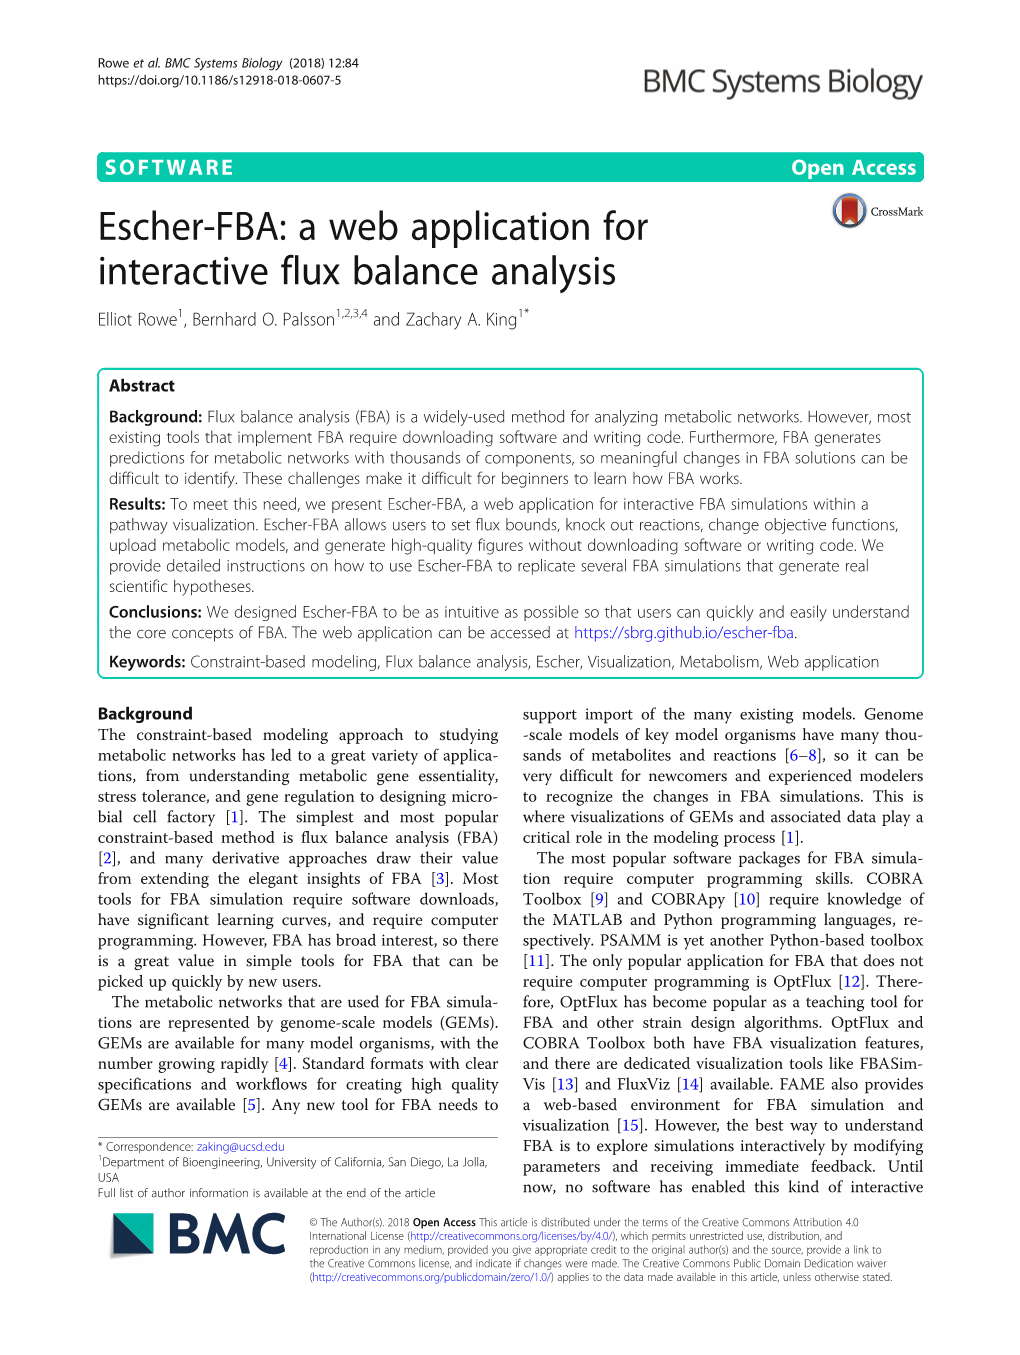 Escher-FBA: a Web Application for Interactive Flux Balance Analysis Elliot Rowe1, Bernhard O